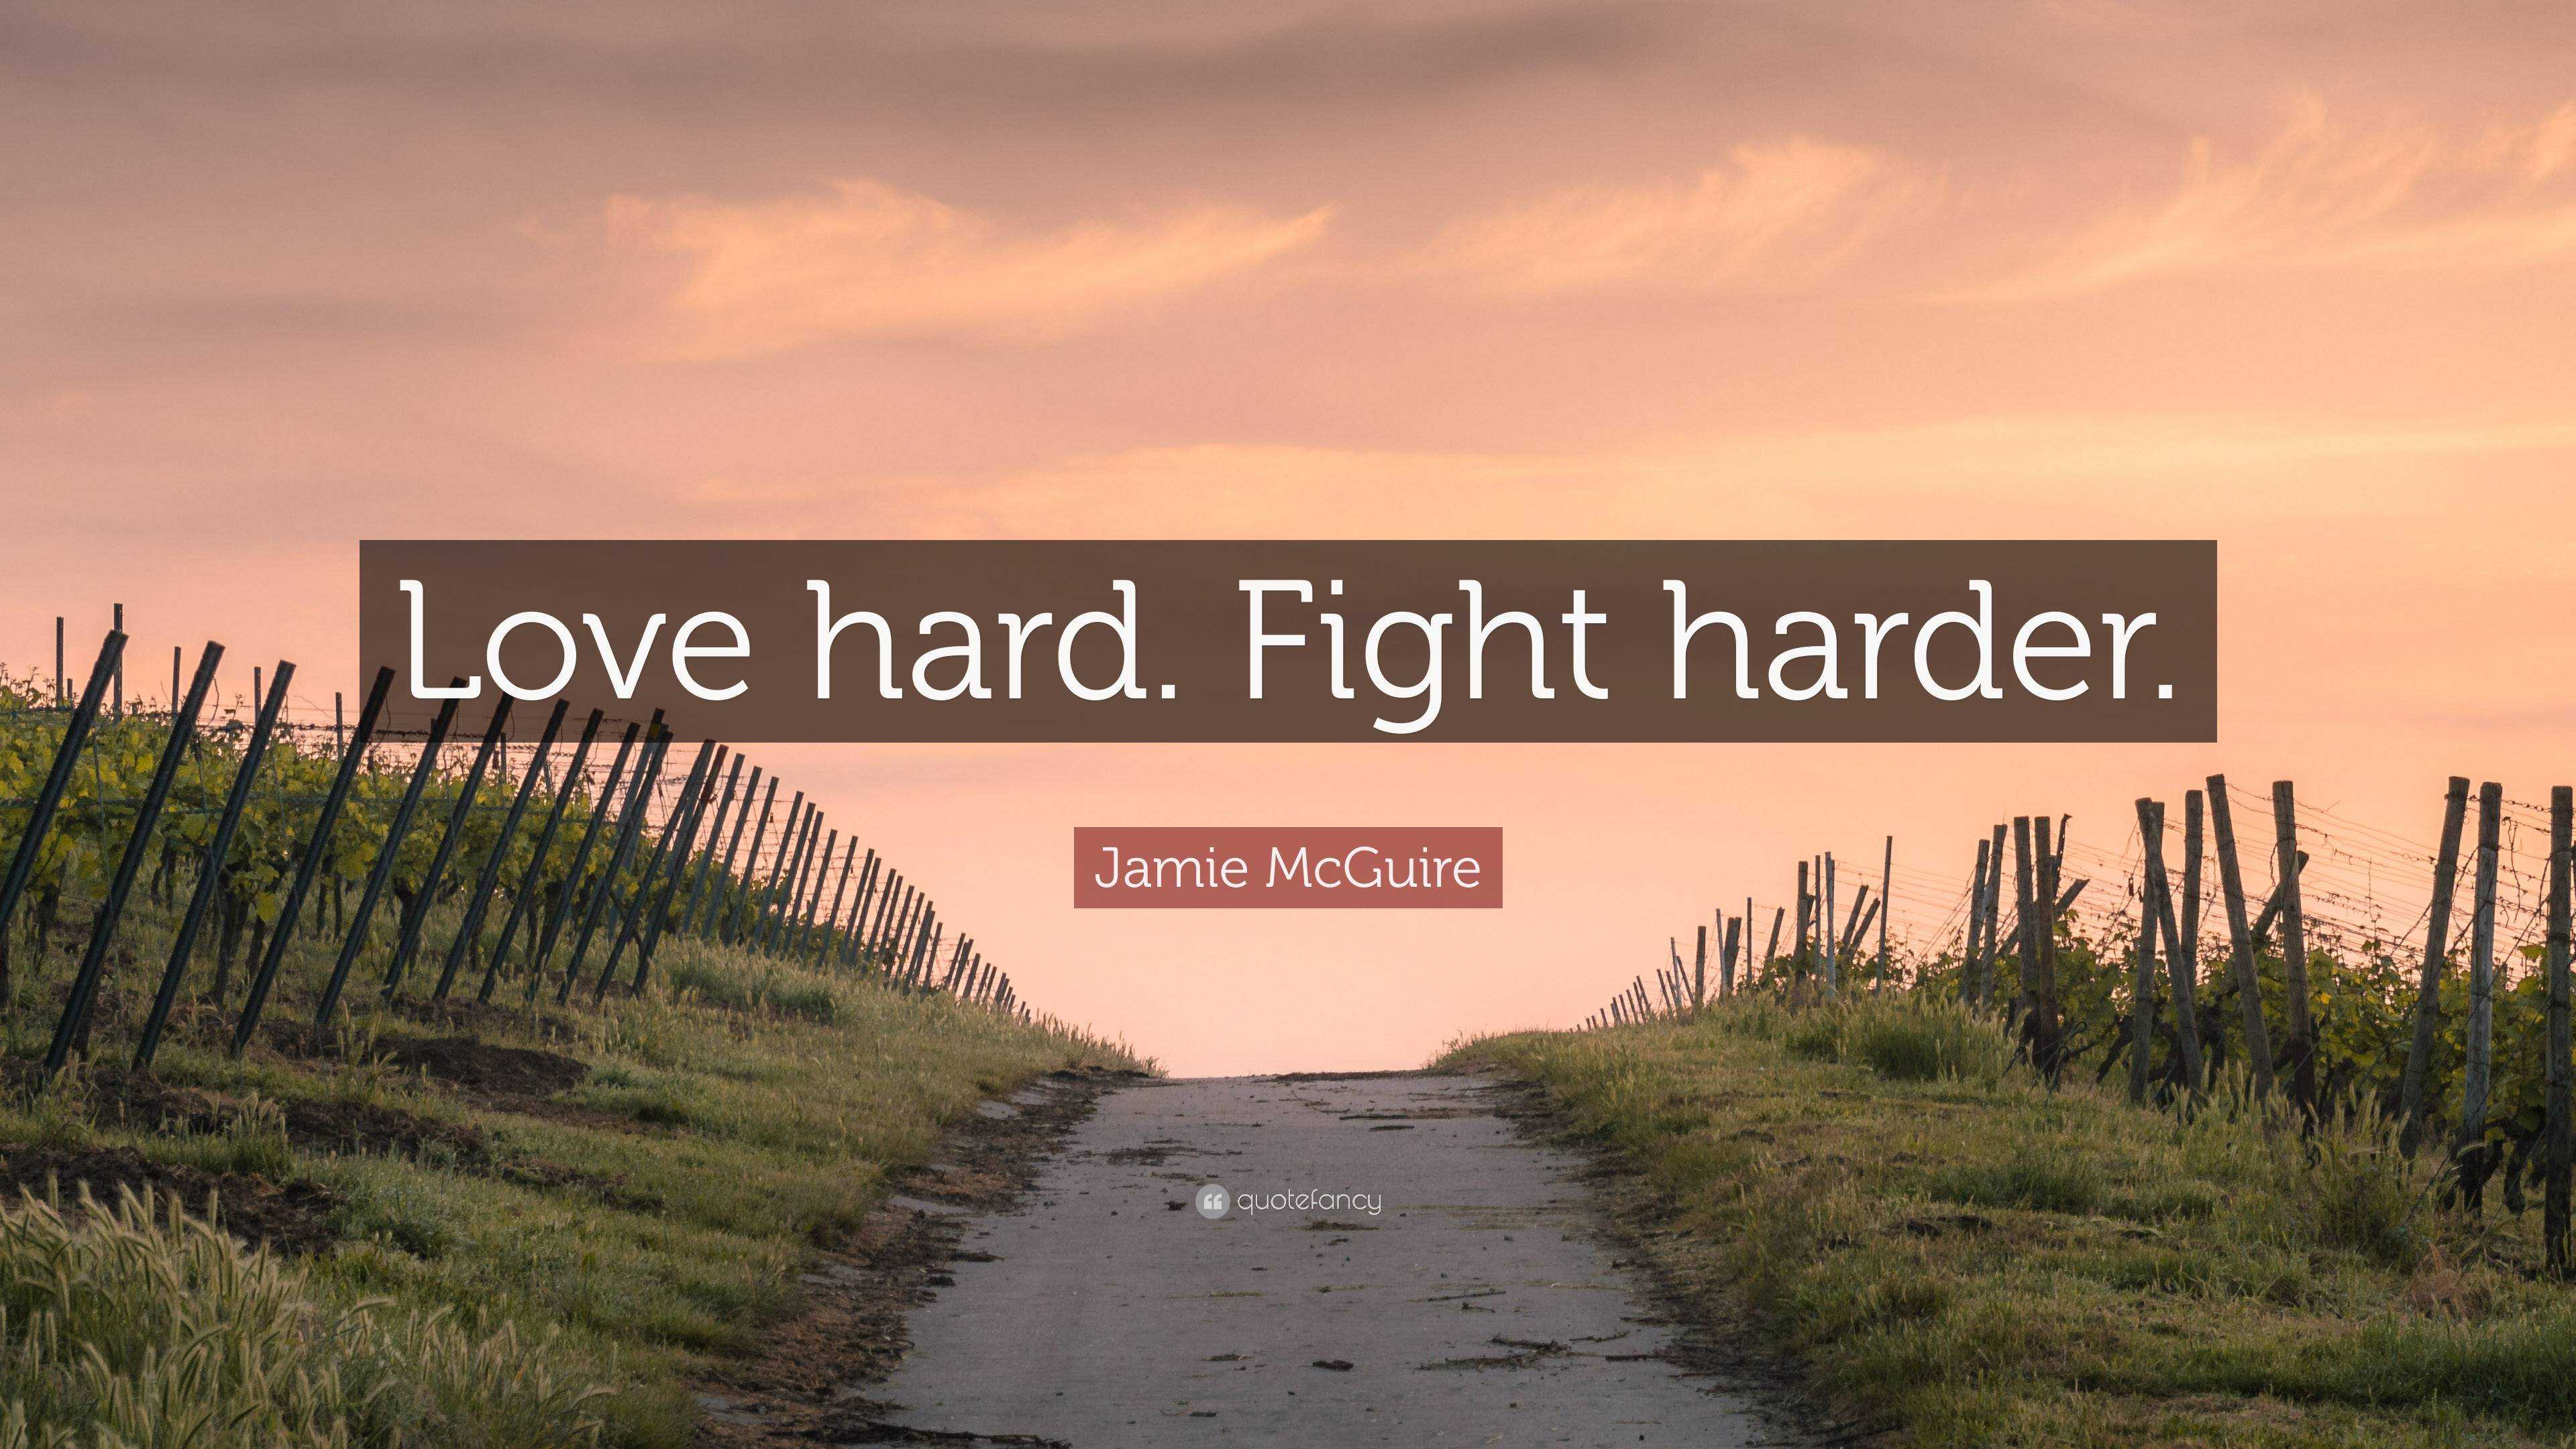 https://quotefancy.com/media/wallpaper/3840x2160/6941636-Jamie-McGuire-Quote-Love-hard-Fight-harder.jpg